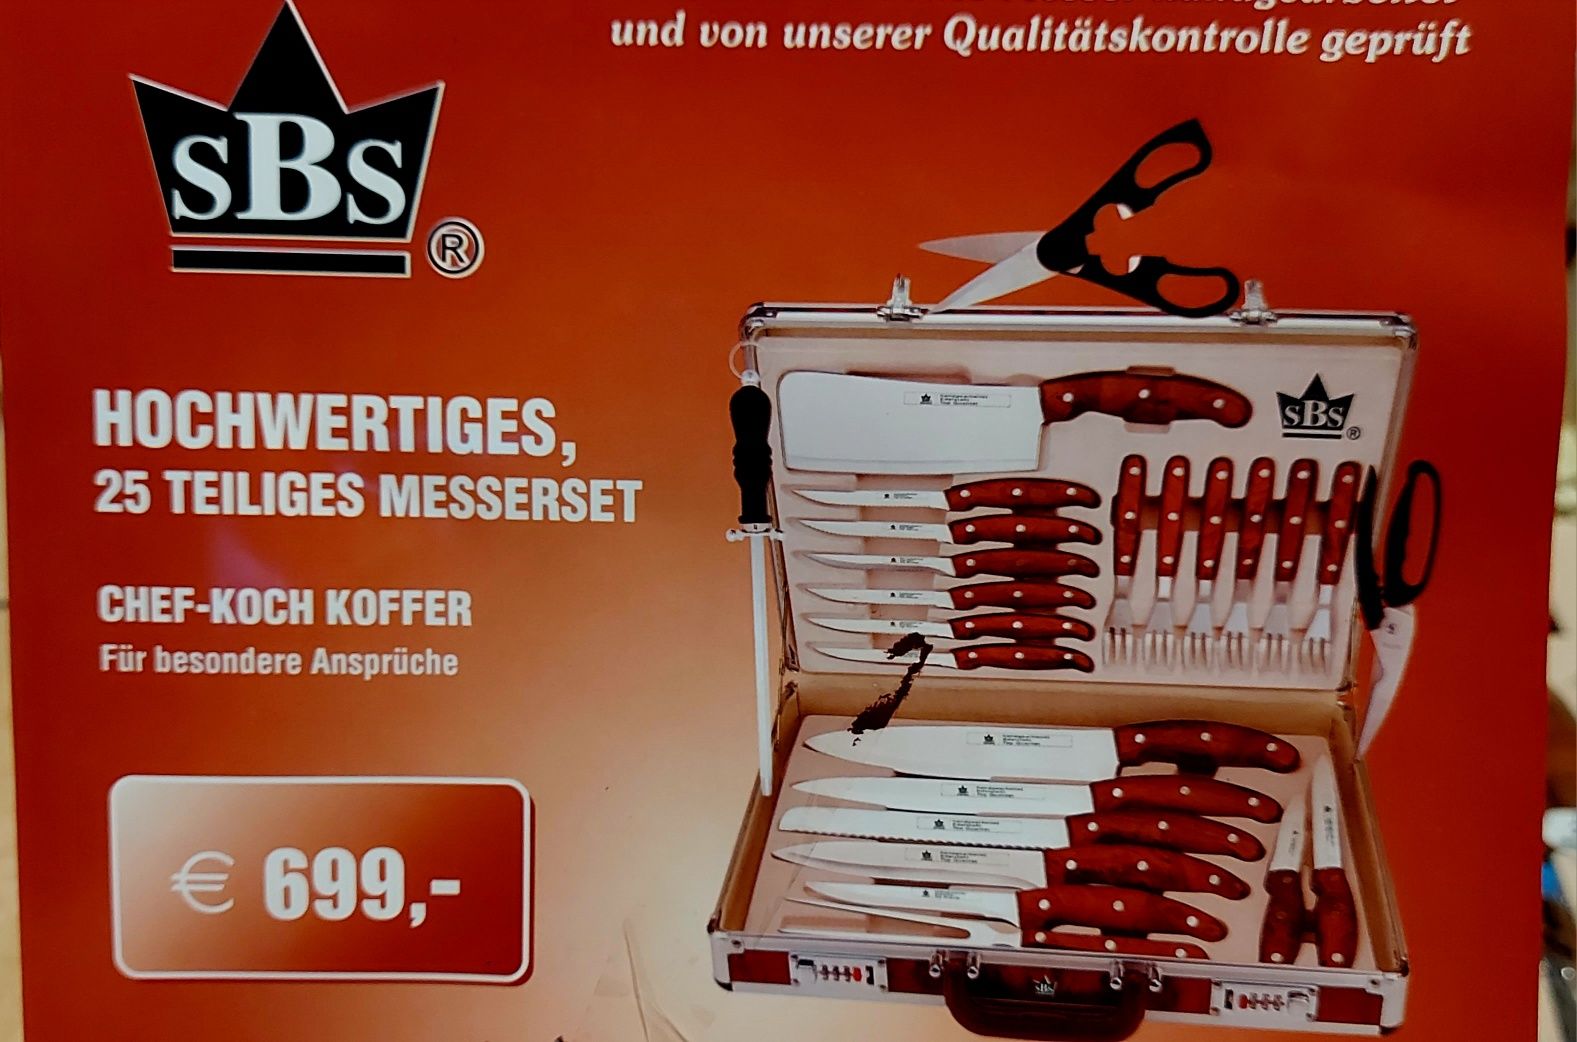 Zestaw kuchenny niemieckiej firmy Hochwertige chef-koch koffer